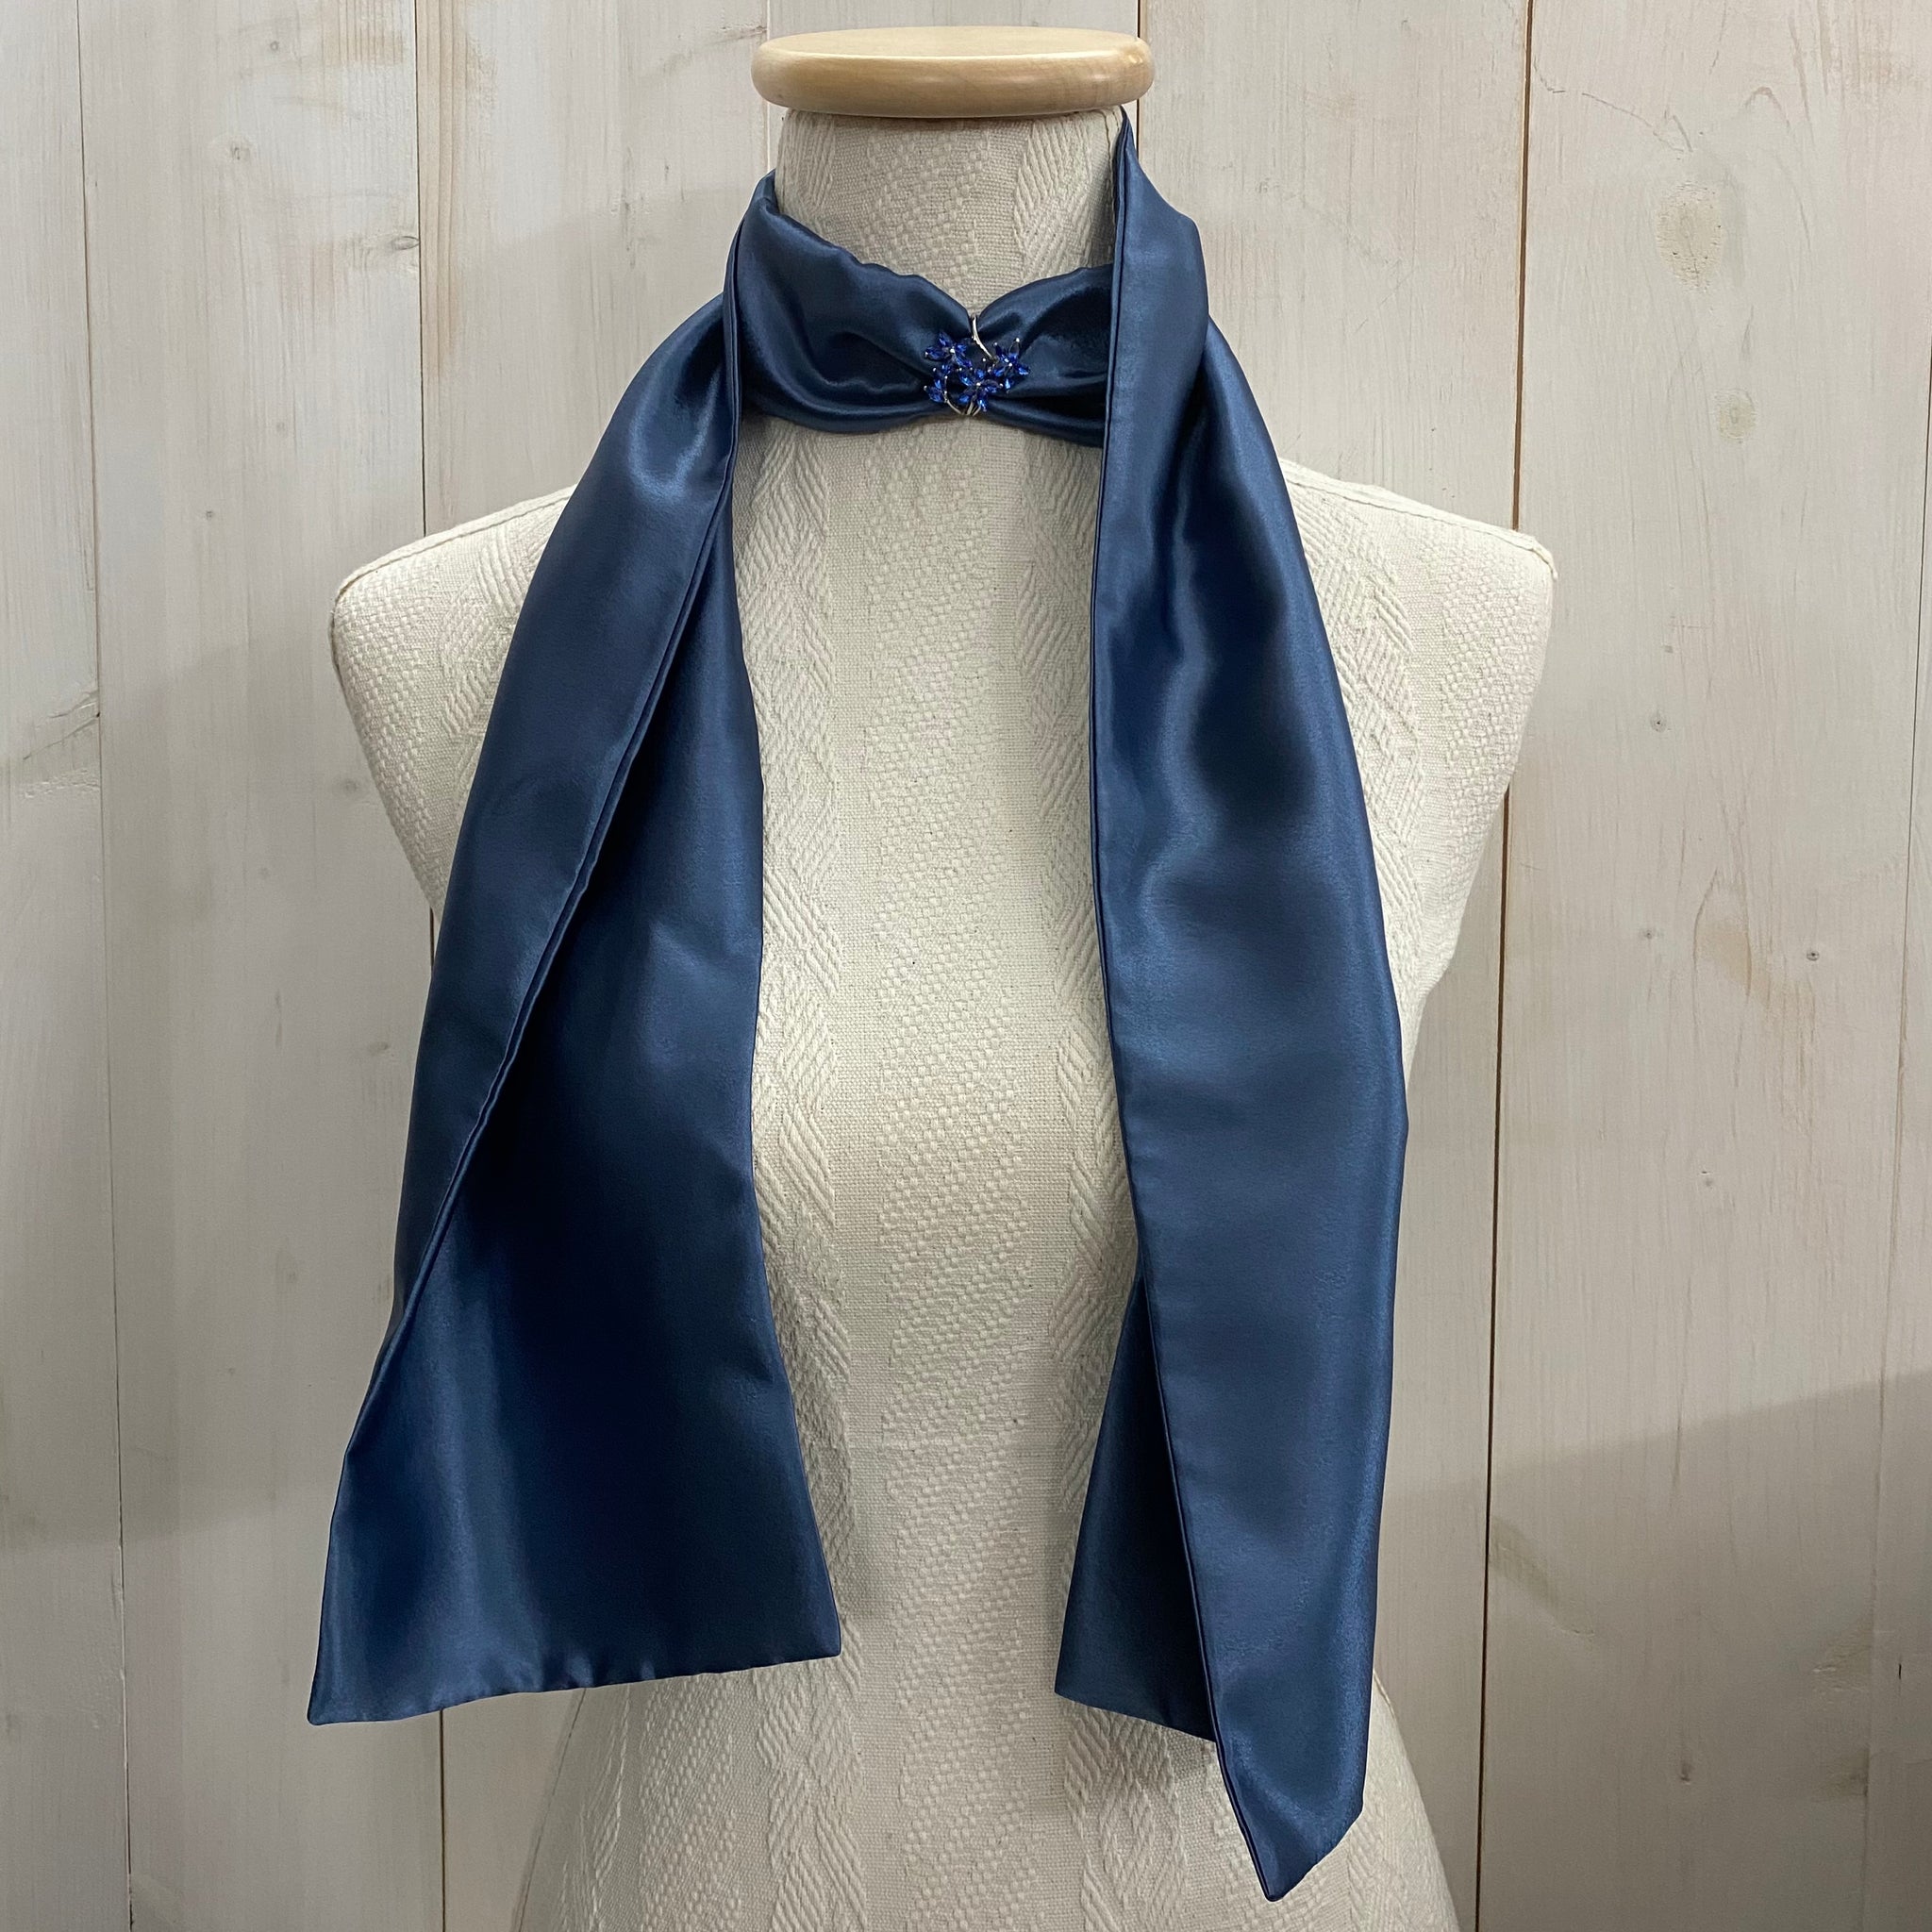 foulard in pura seta con centrale in strass – Viale del re 33